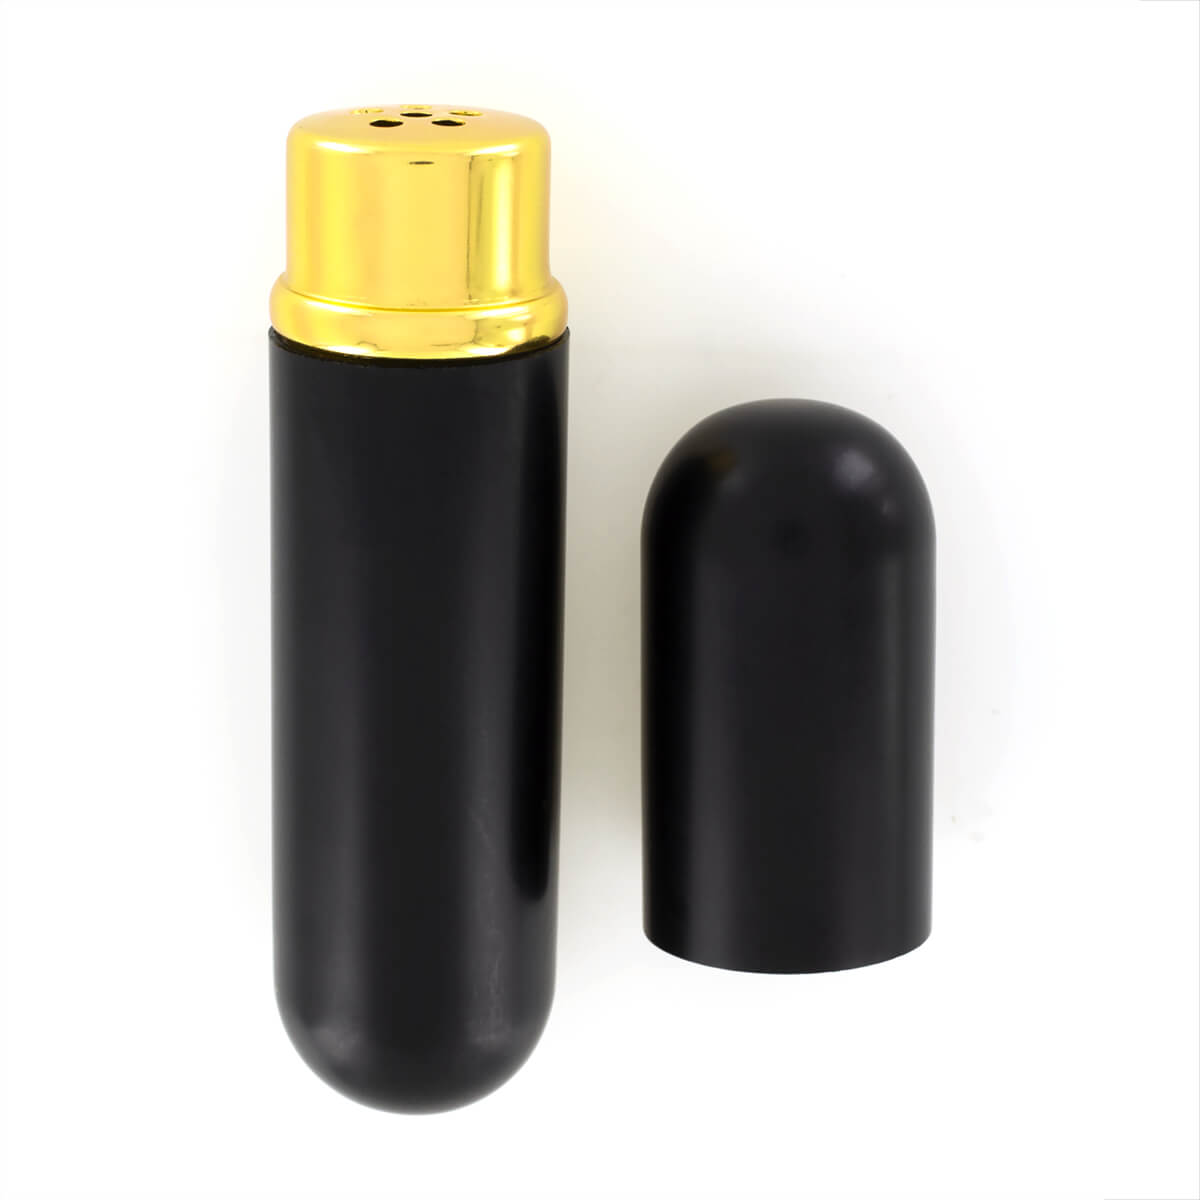 Inhalateur aluminium noir pour poppers